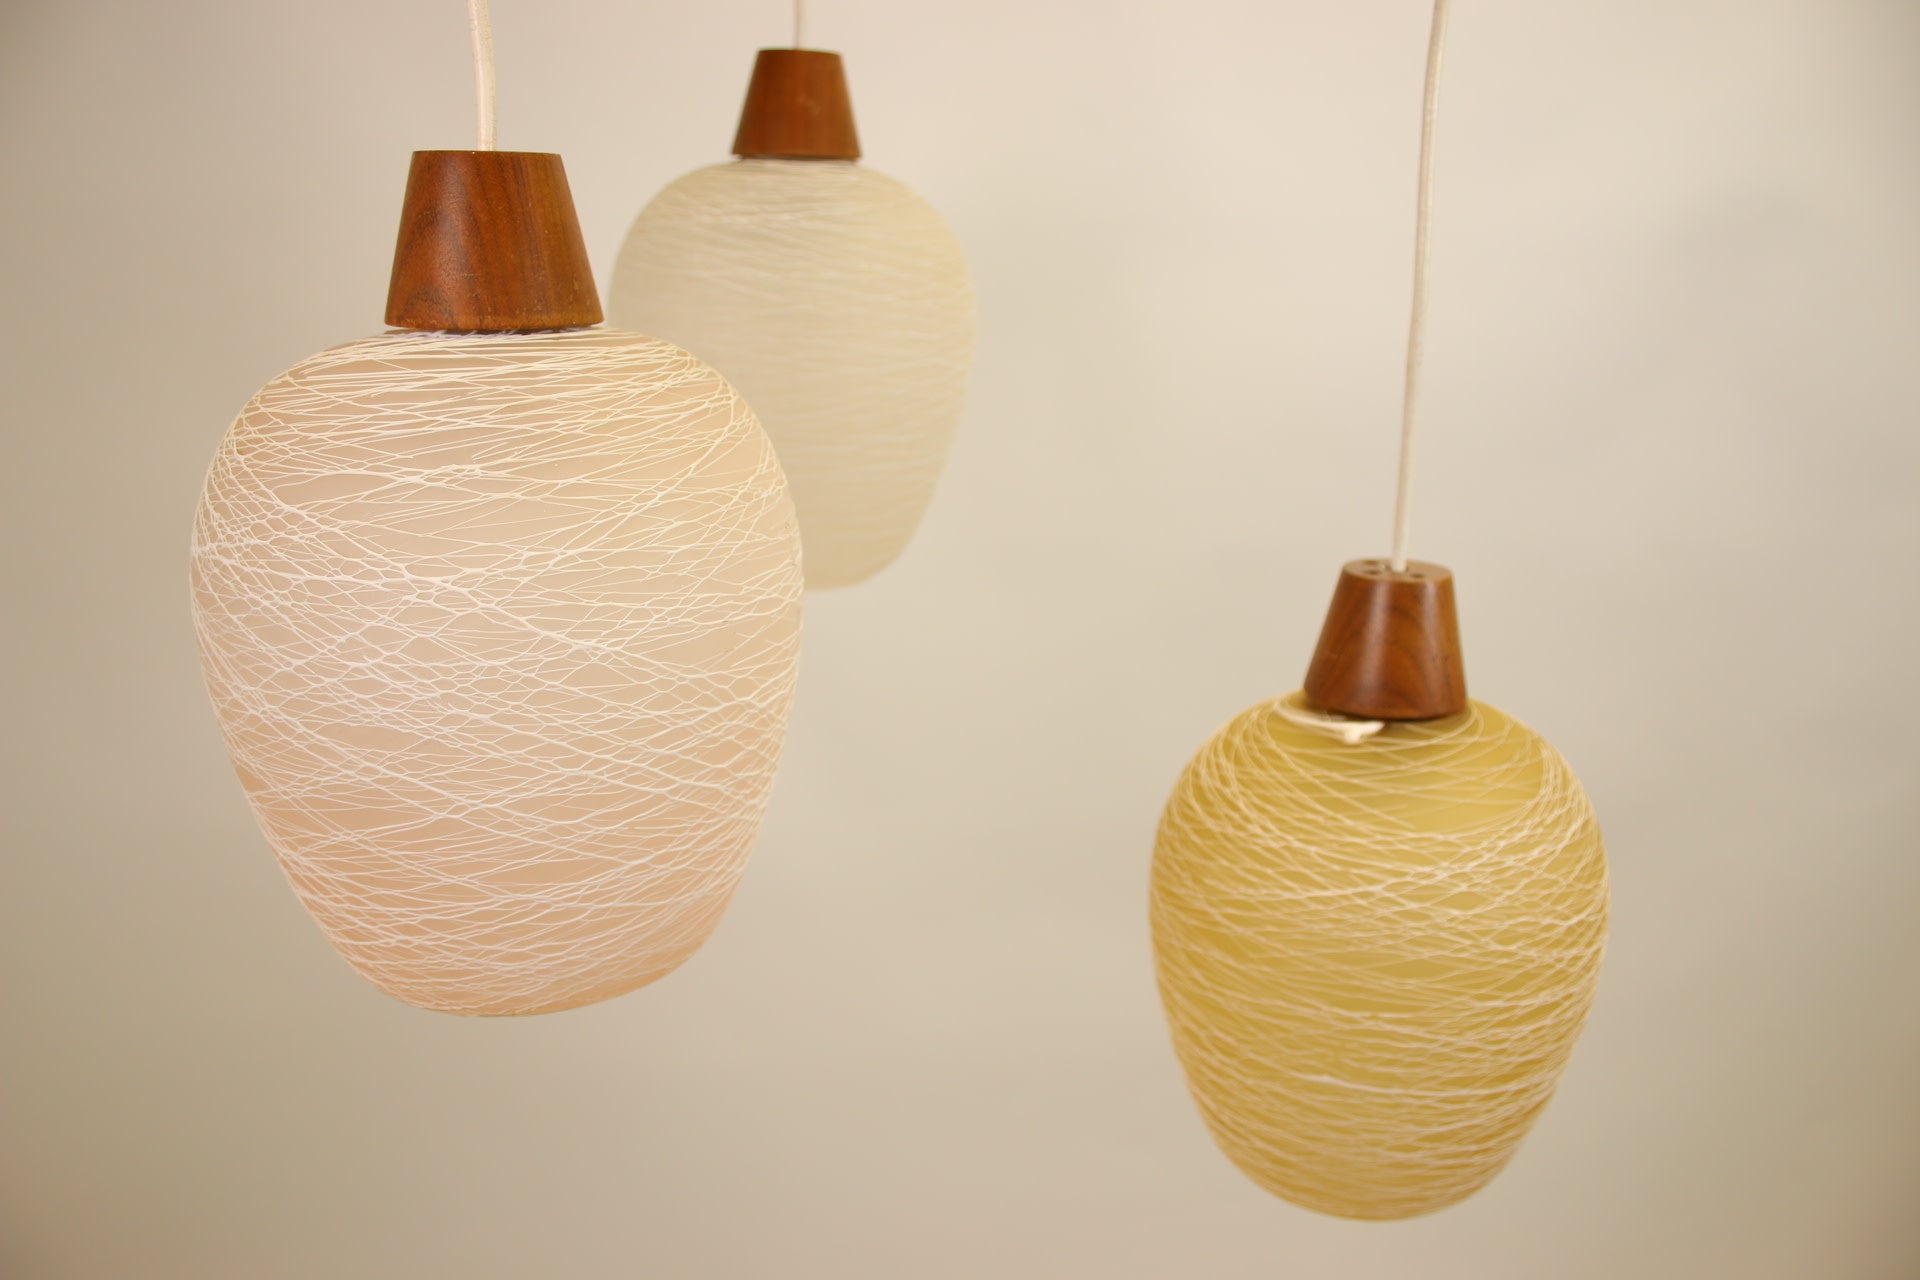 Scandinavische Hanglamp met 3 gekleurden Glazen bollen detail voorkant lampjes